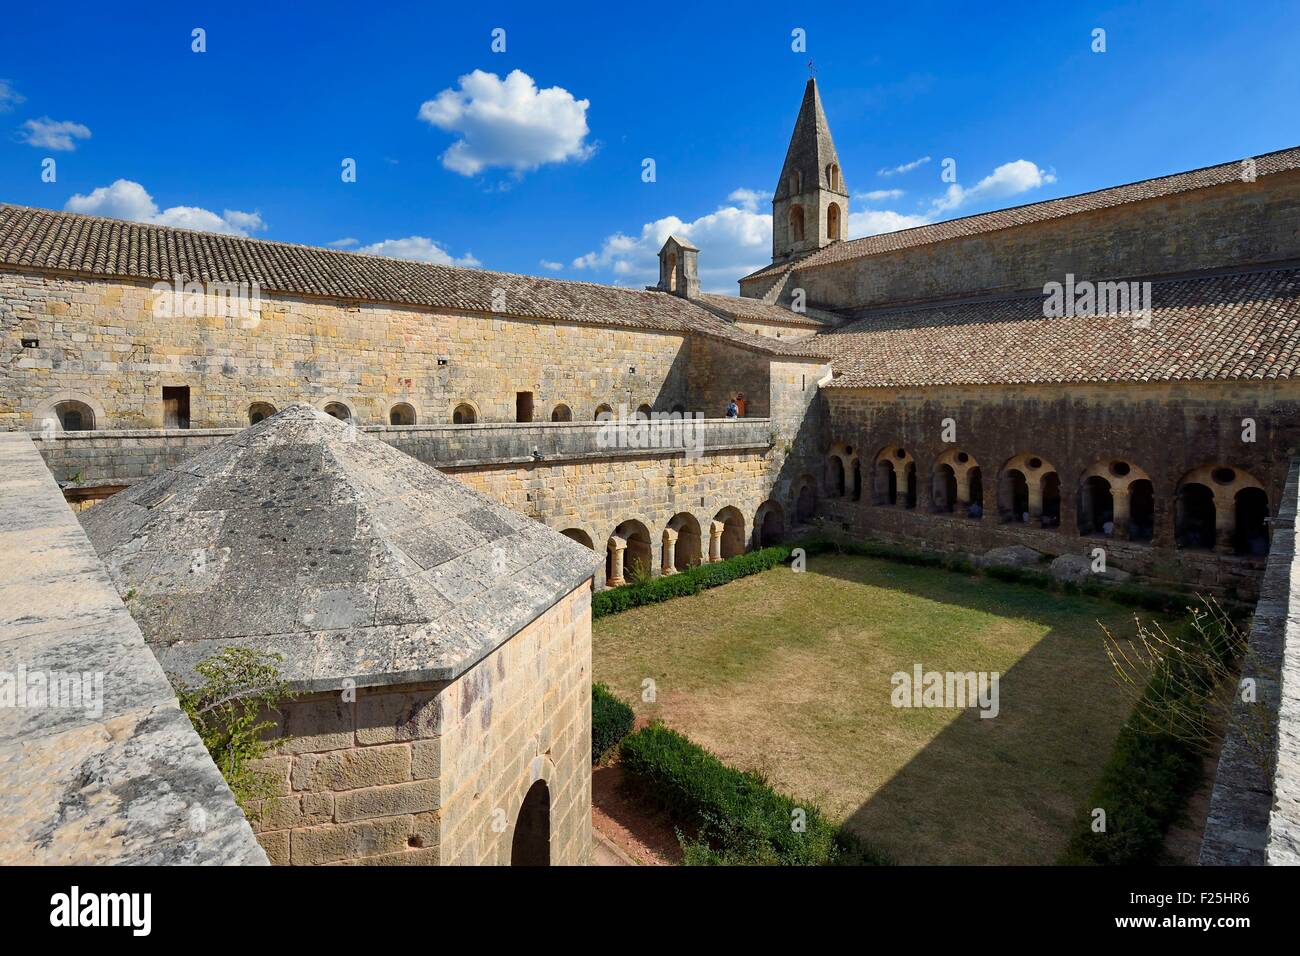 France, Var, the Thoronet cistercian abbey, the cloister Stock Photo